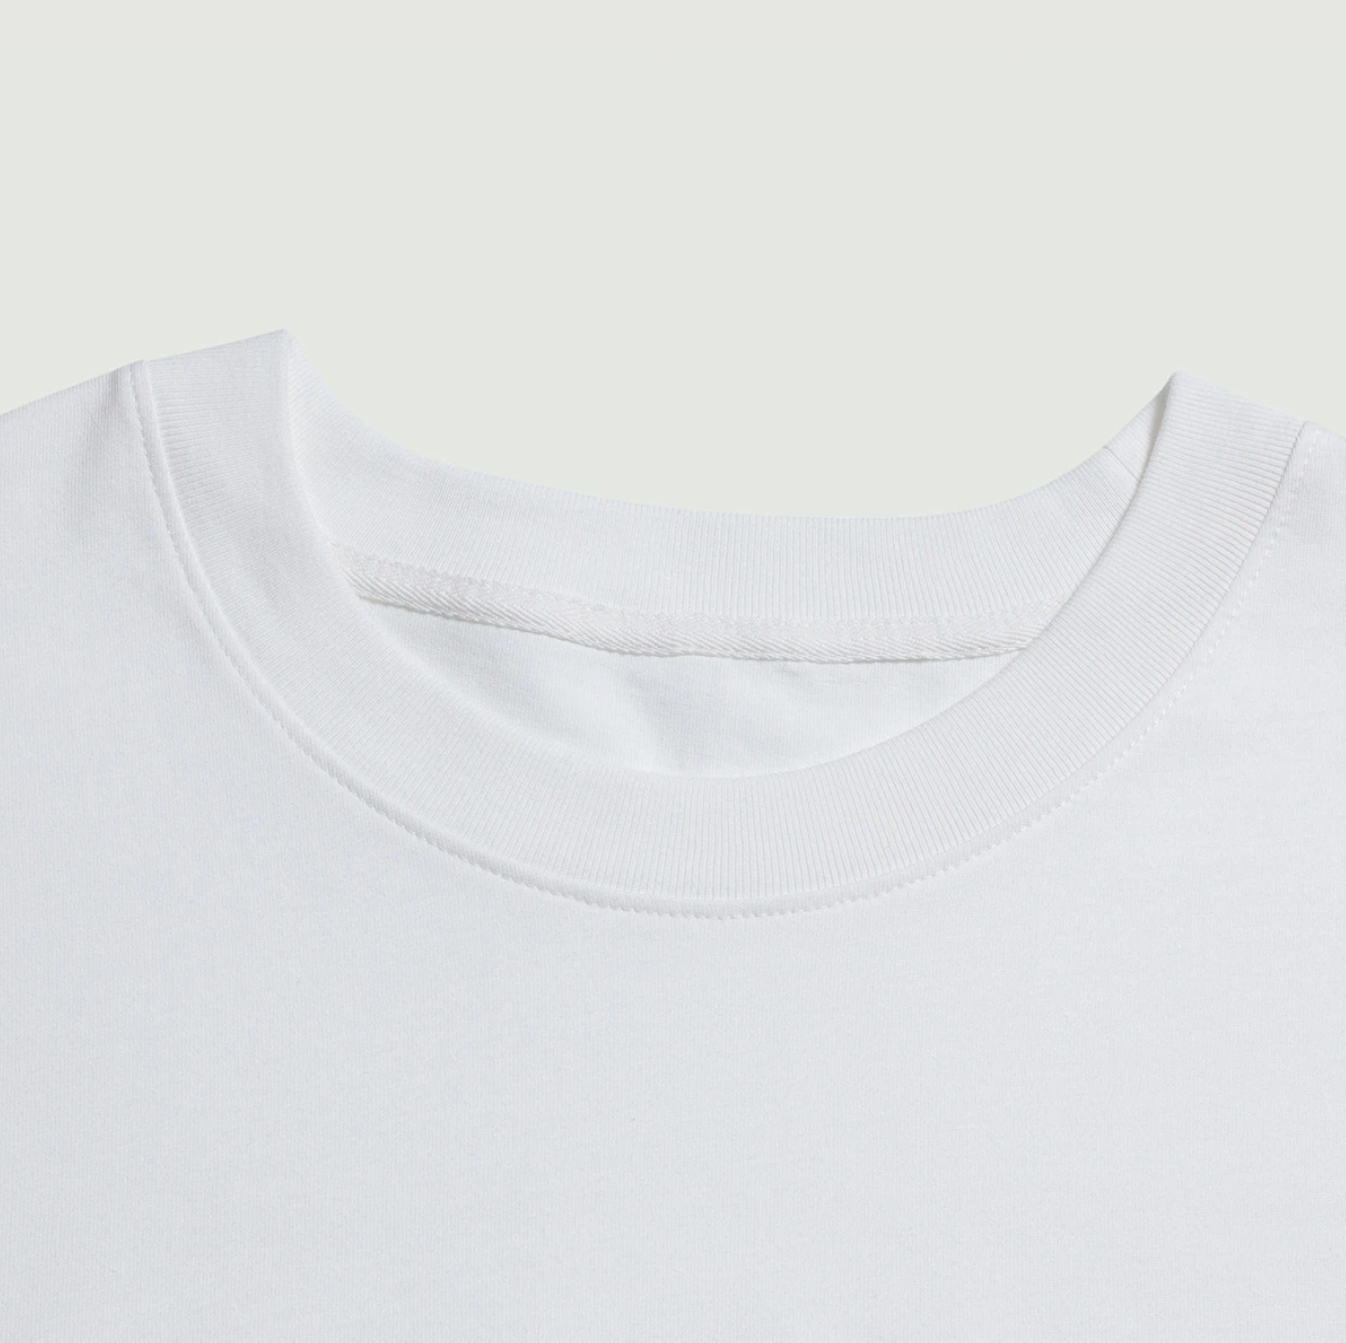 ACID FANTASY (BACK PRINT) - Unisex Oversized T-shirt